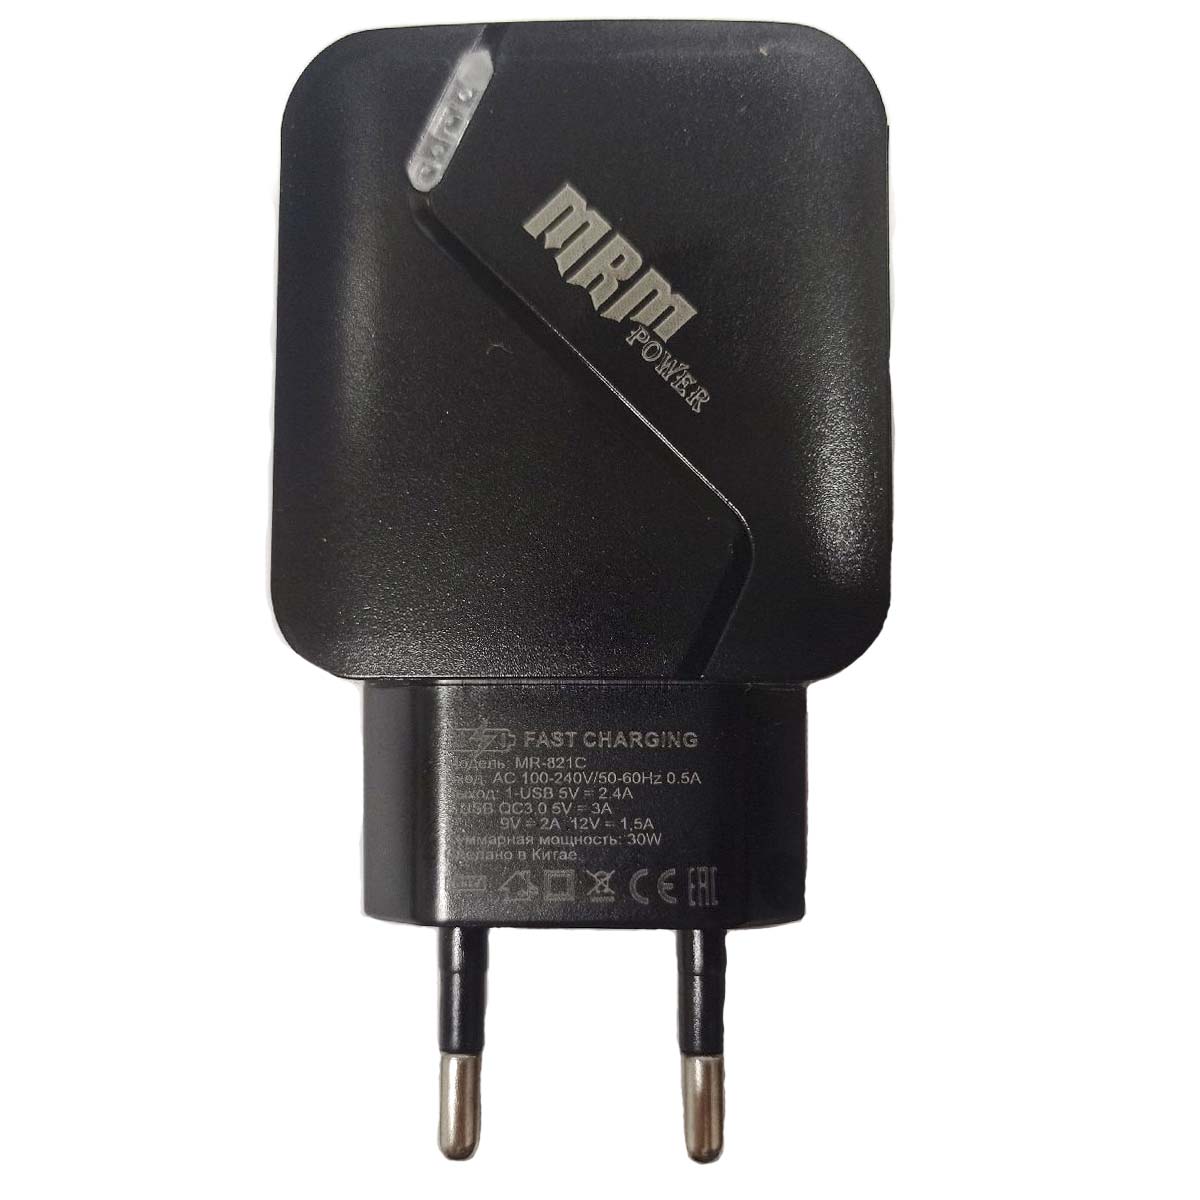 СЗУ (Сетевое зарядное устройство) MRM MR821C, 2.4A, QC 3.0, 2 USB, цвет черный